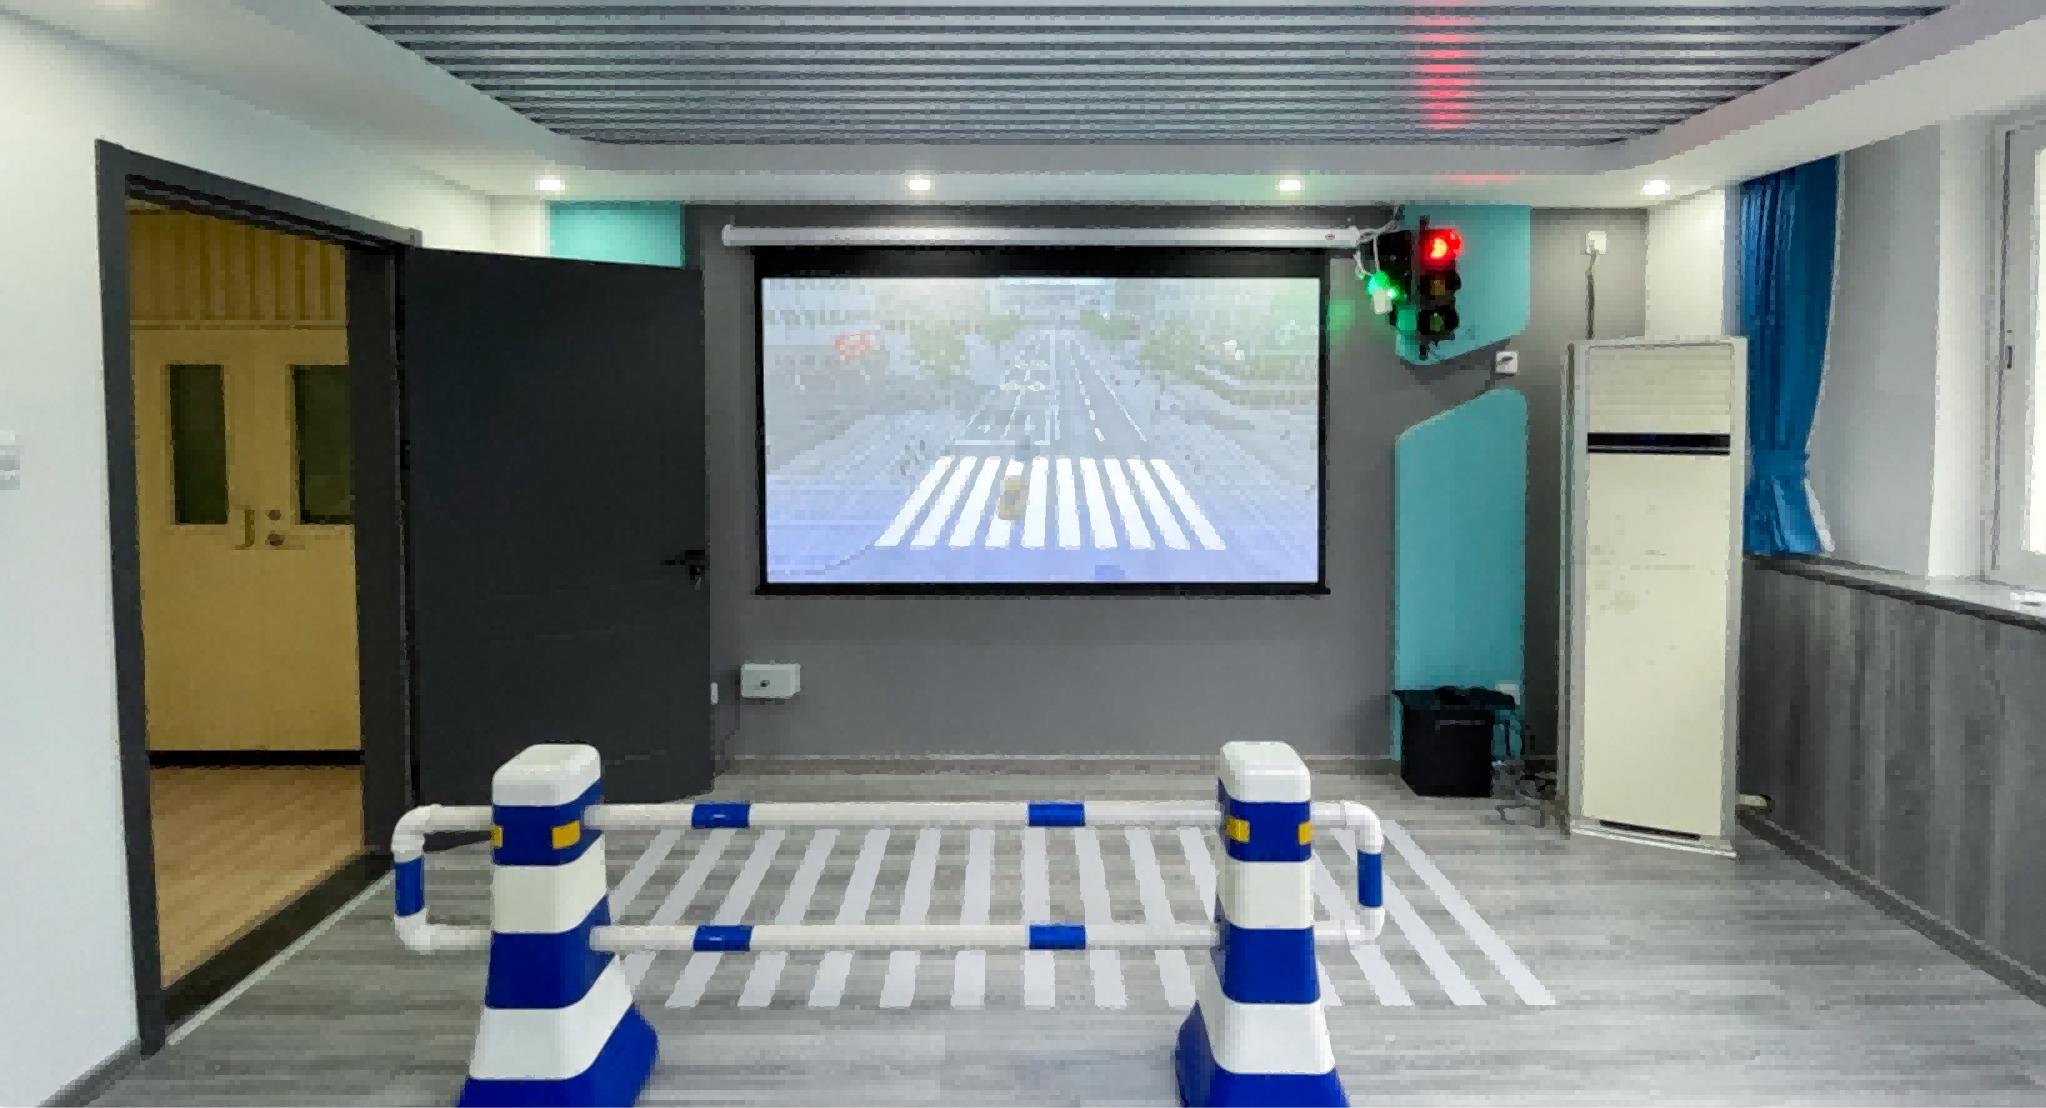 vr施工安全施工體驗館 應急VR實景模擬互動系統 安全科普教育體驗館